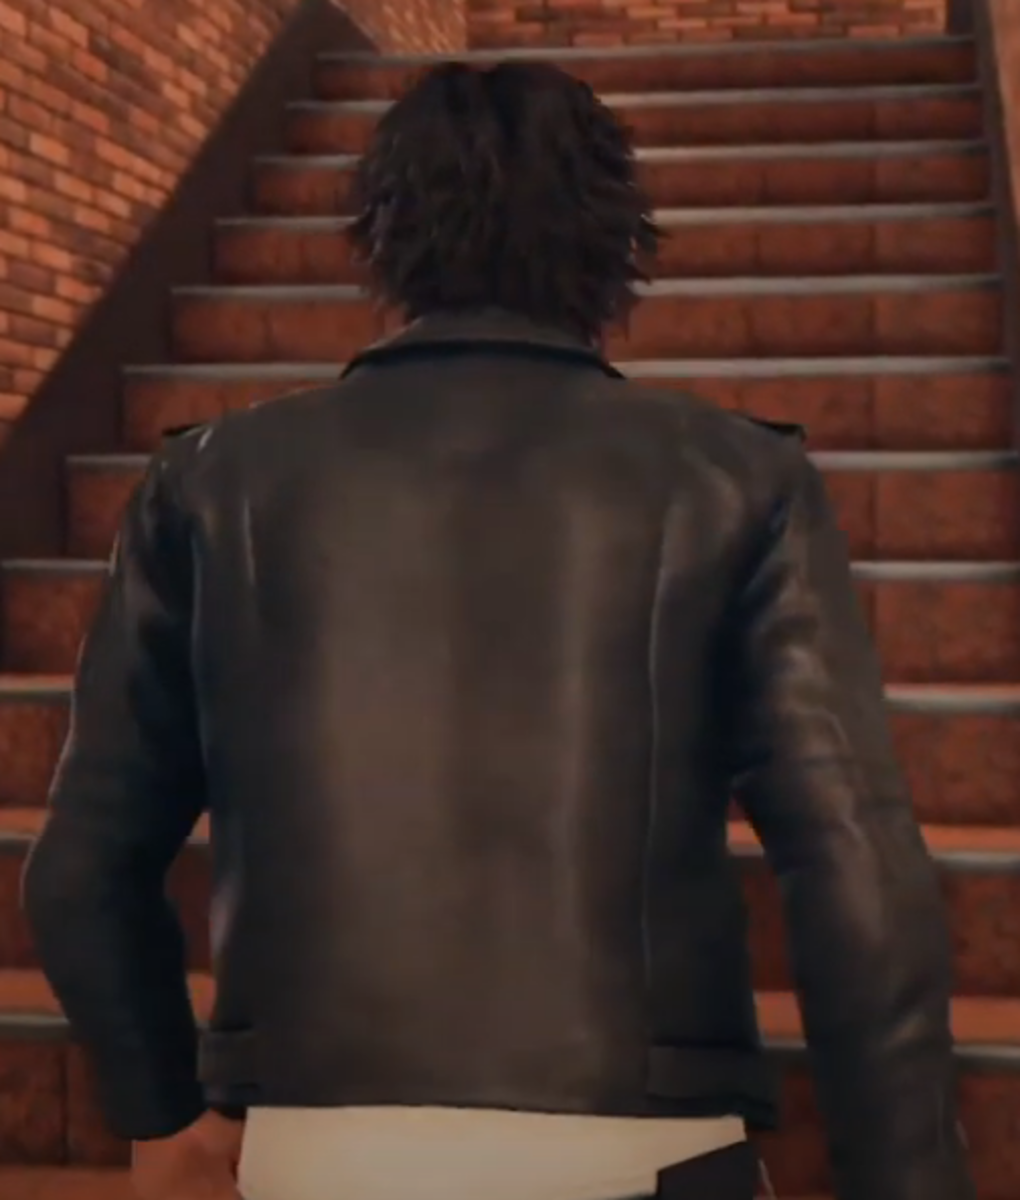 Black Motorycle Leather Jacket